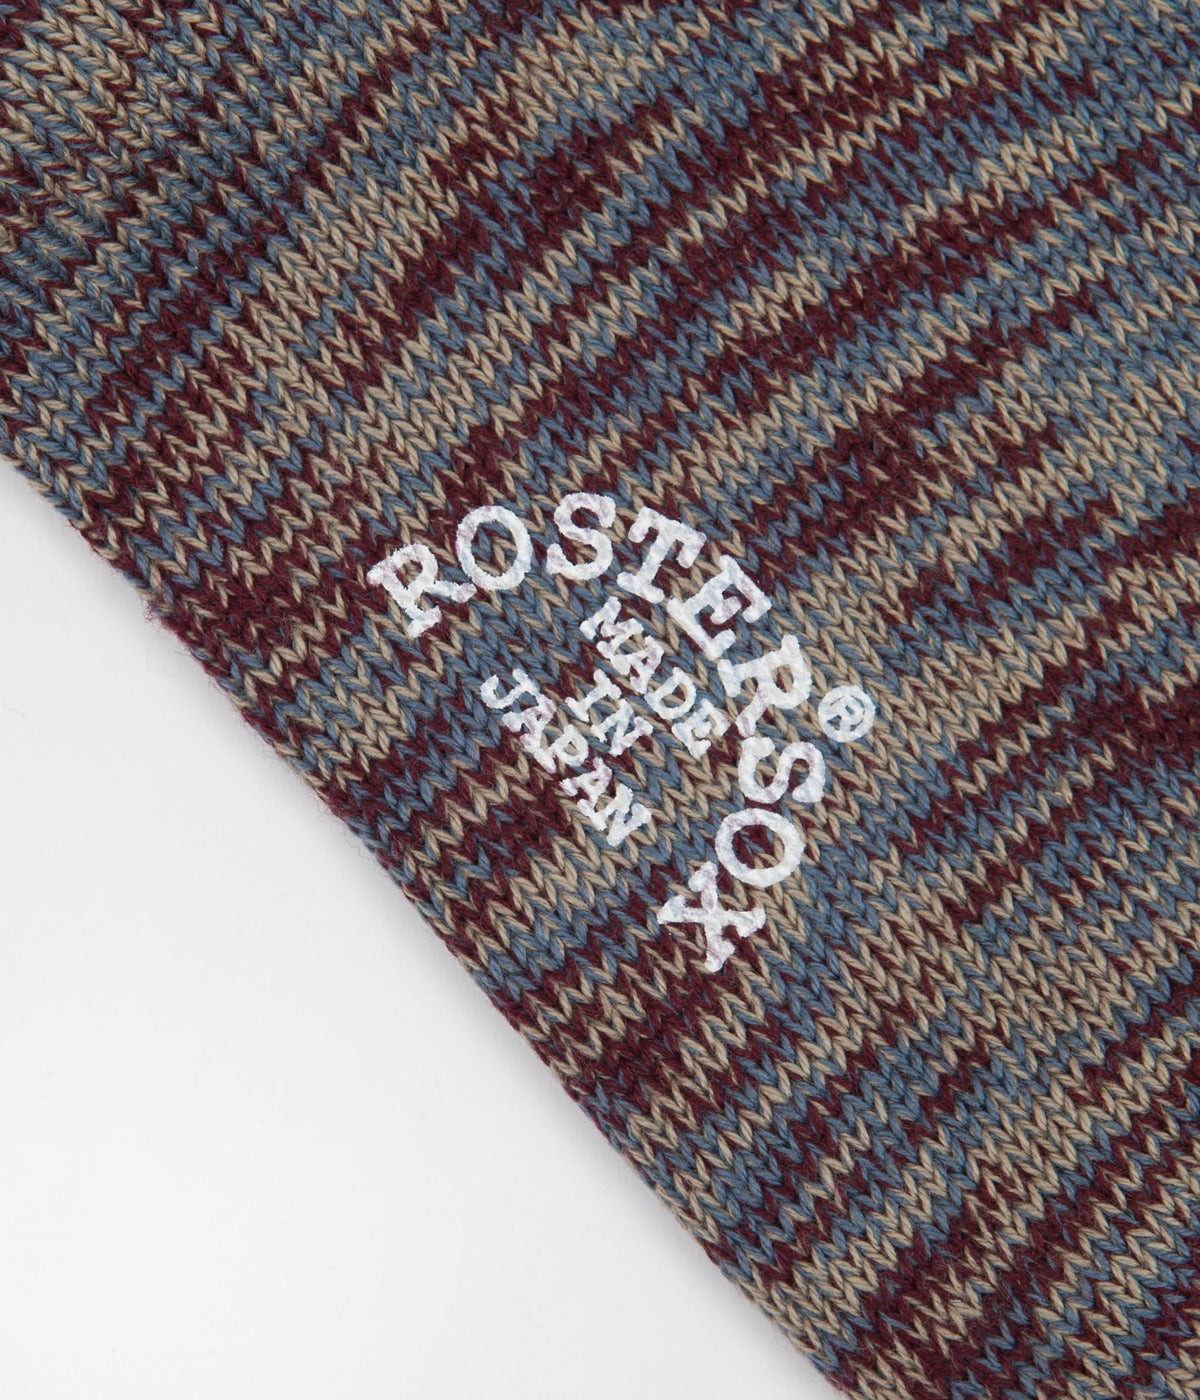 Rostersox Tiger Socks Wine